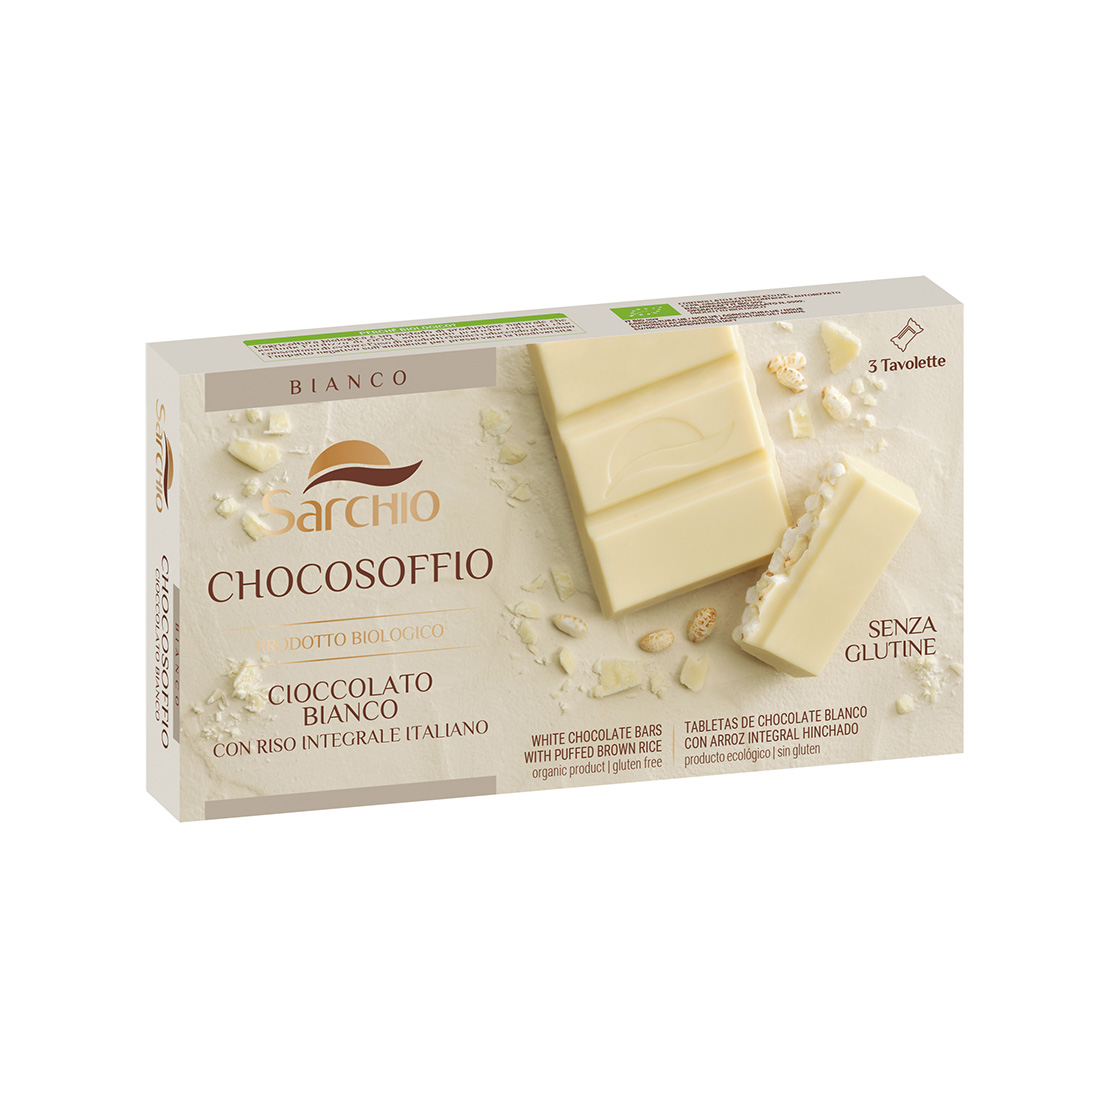 Chocosoffio white chocolate